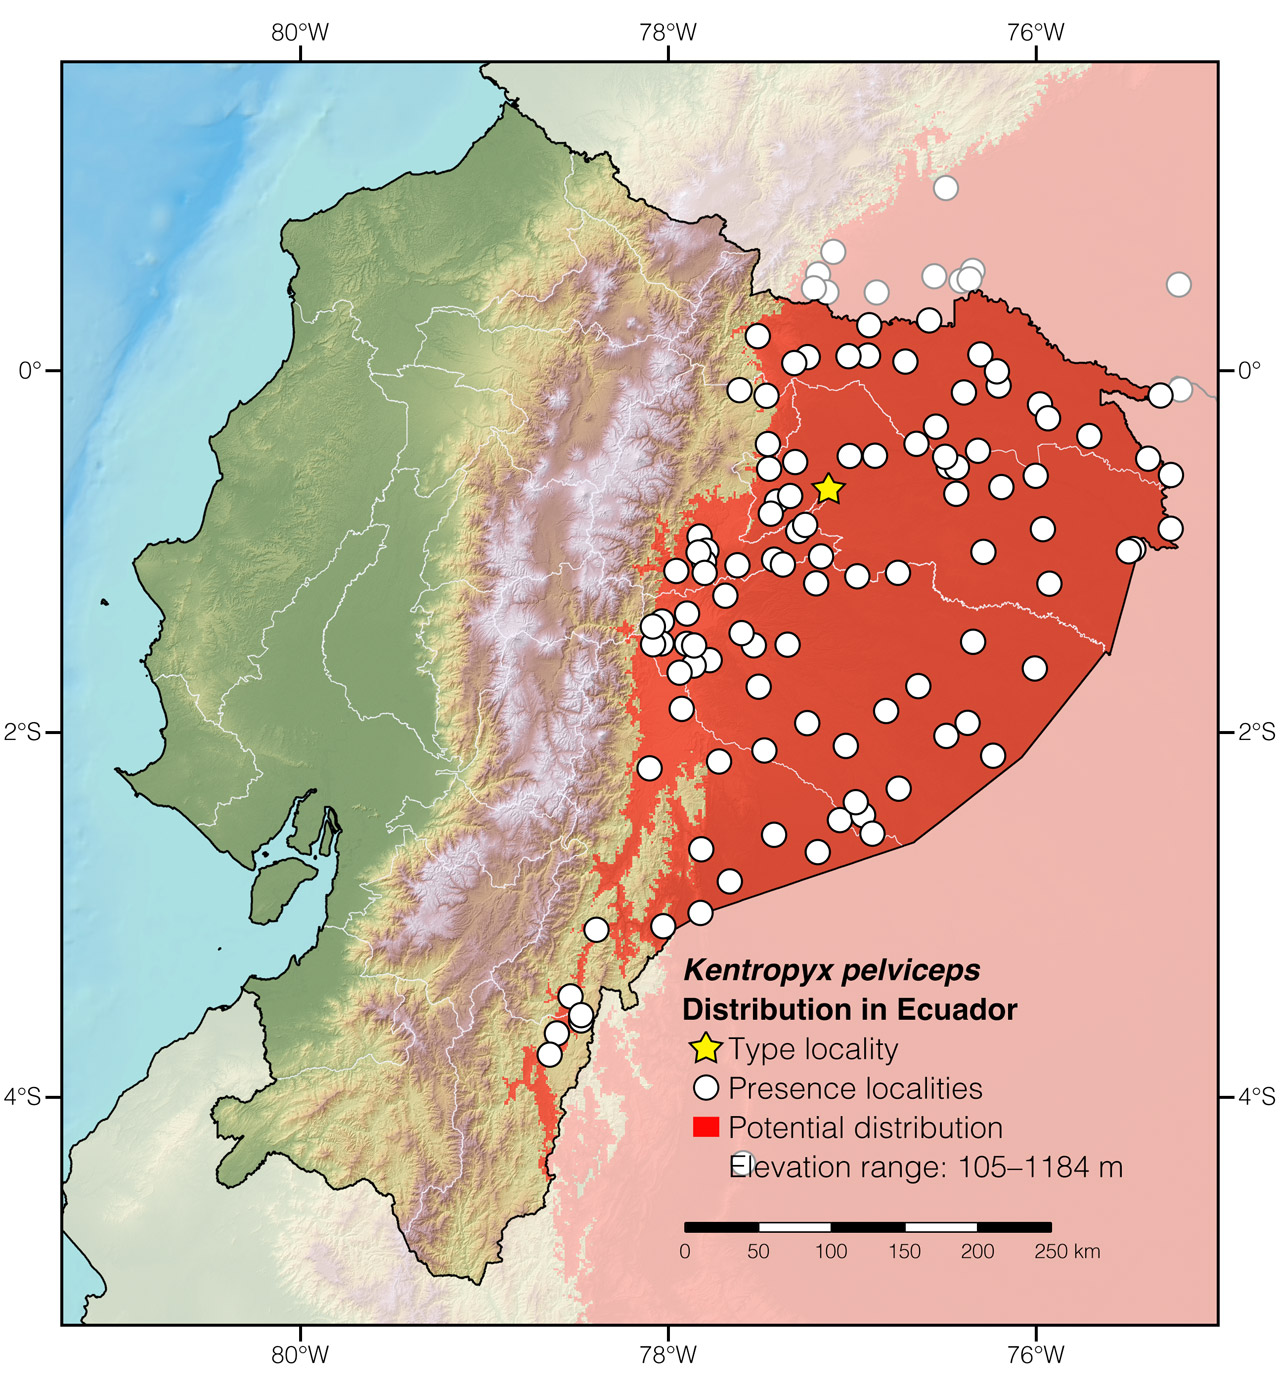 Distribution of Kentropyx pelviceps in Ecuador